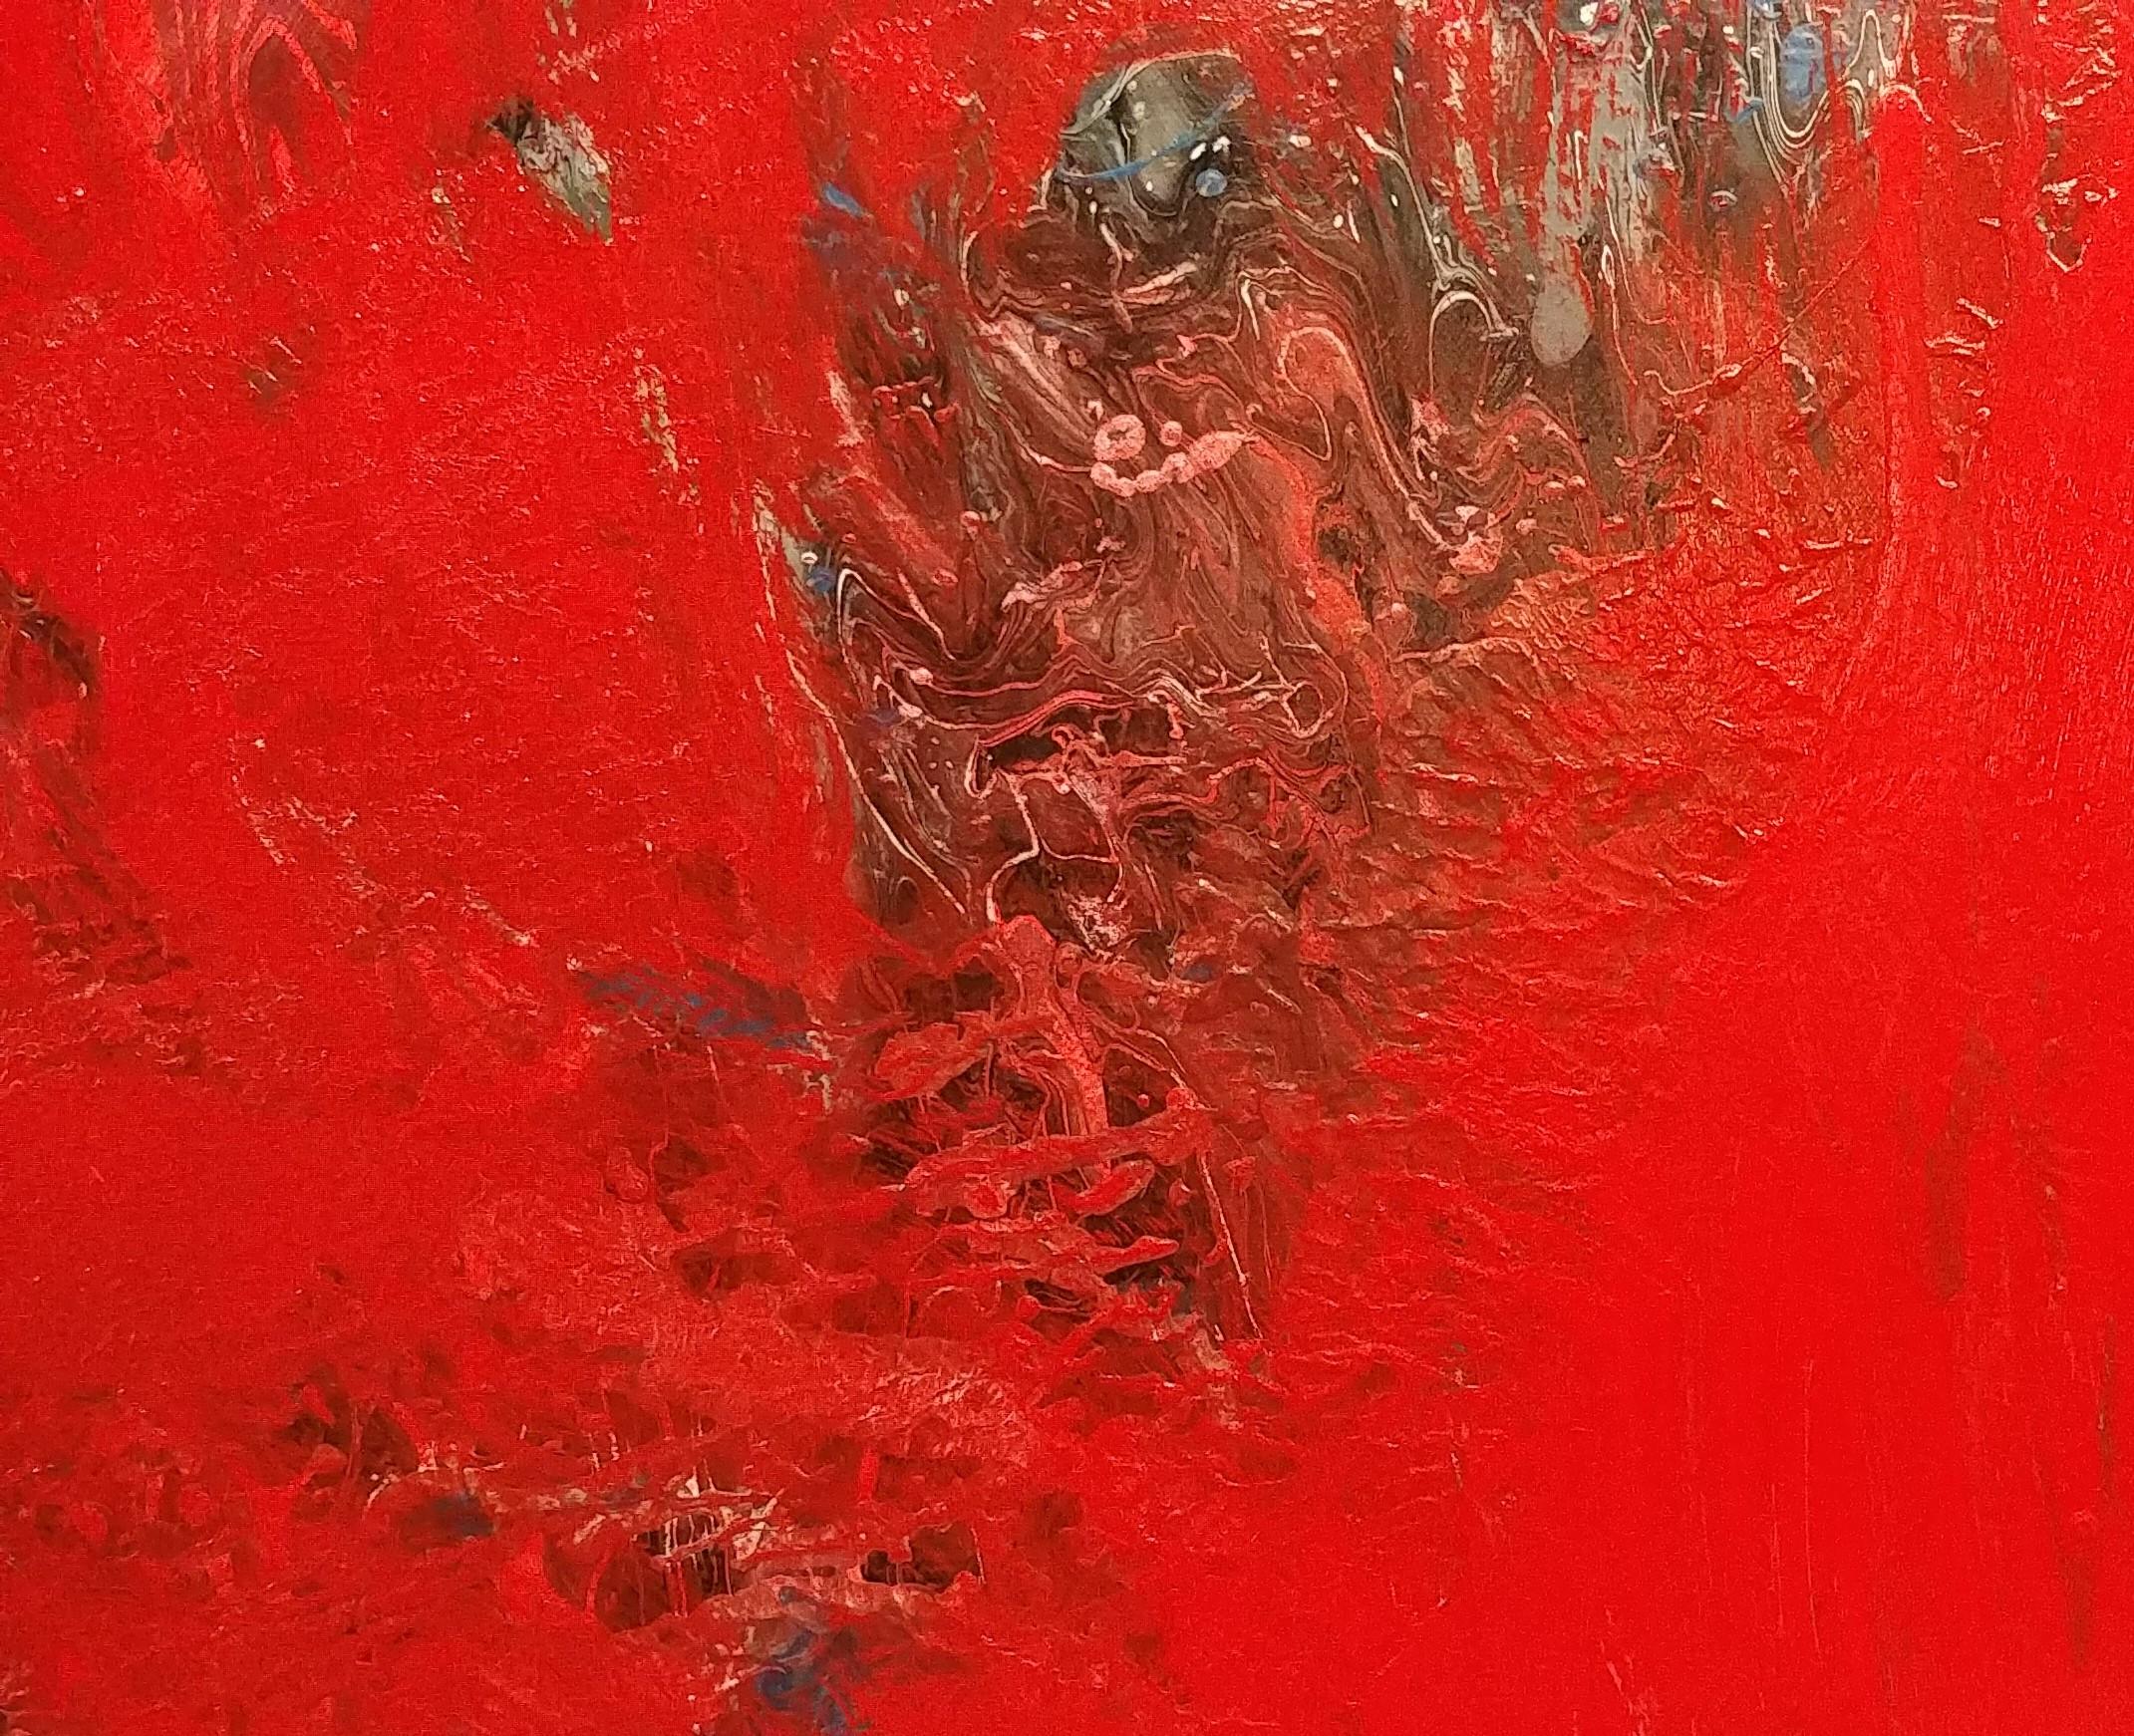 Bursting Forth- Rouge 60 X 48
Acrylique sur toile

Nancy Seibert a commencé ses études d'art à Washington D.C., à l'université George Washington. Elle est diplômée de la Kent State University, où elle a obtenu une licence en beaux-arts et une